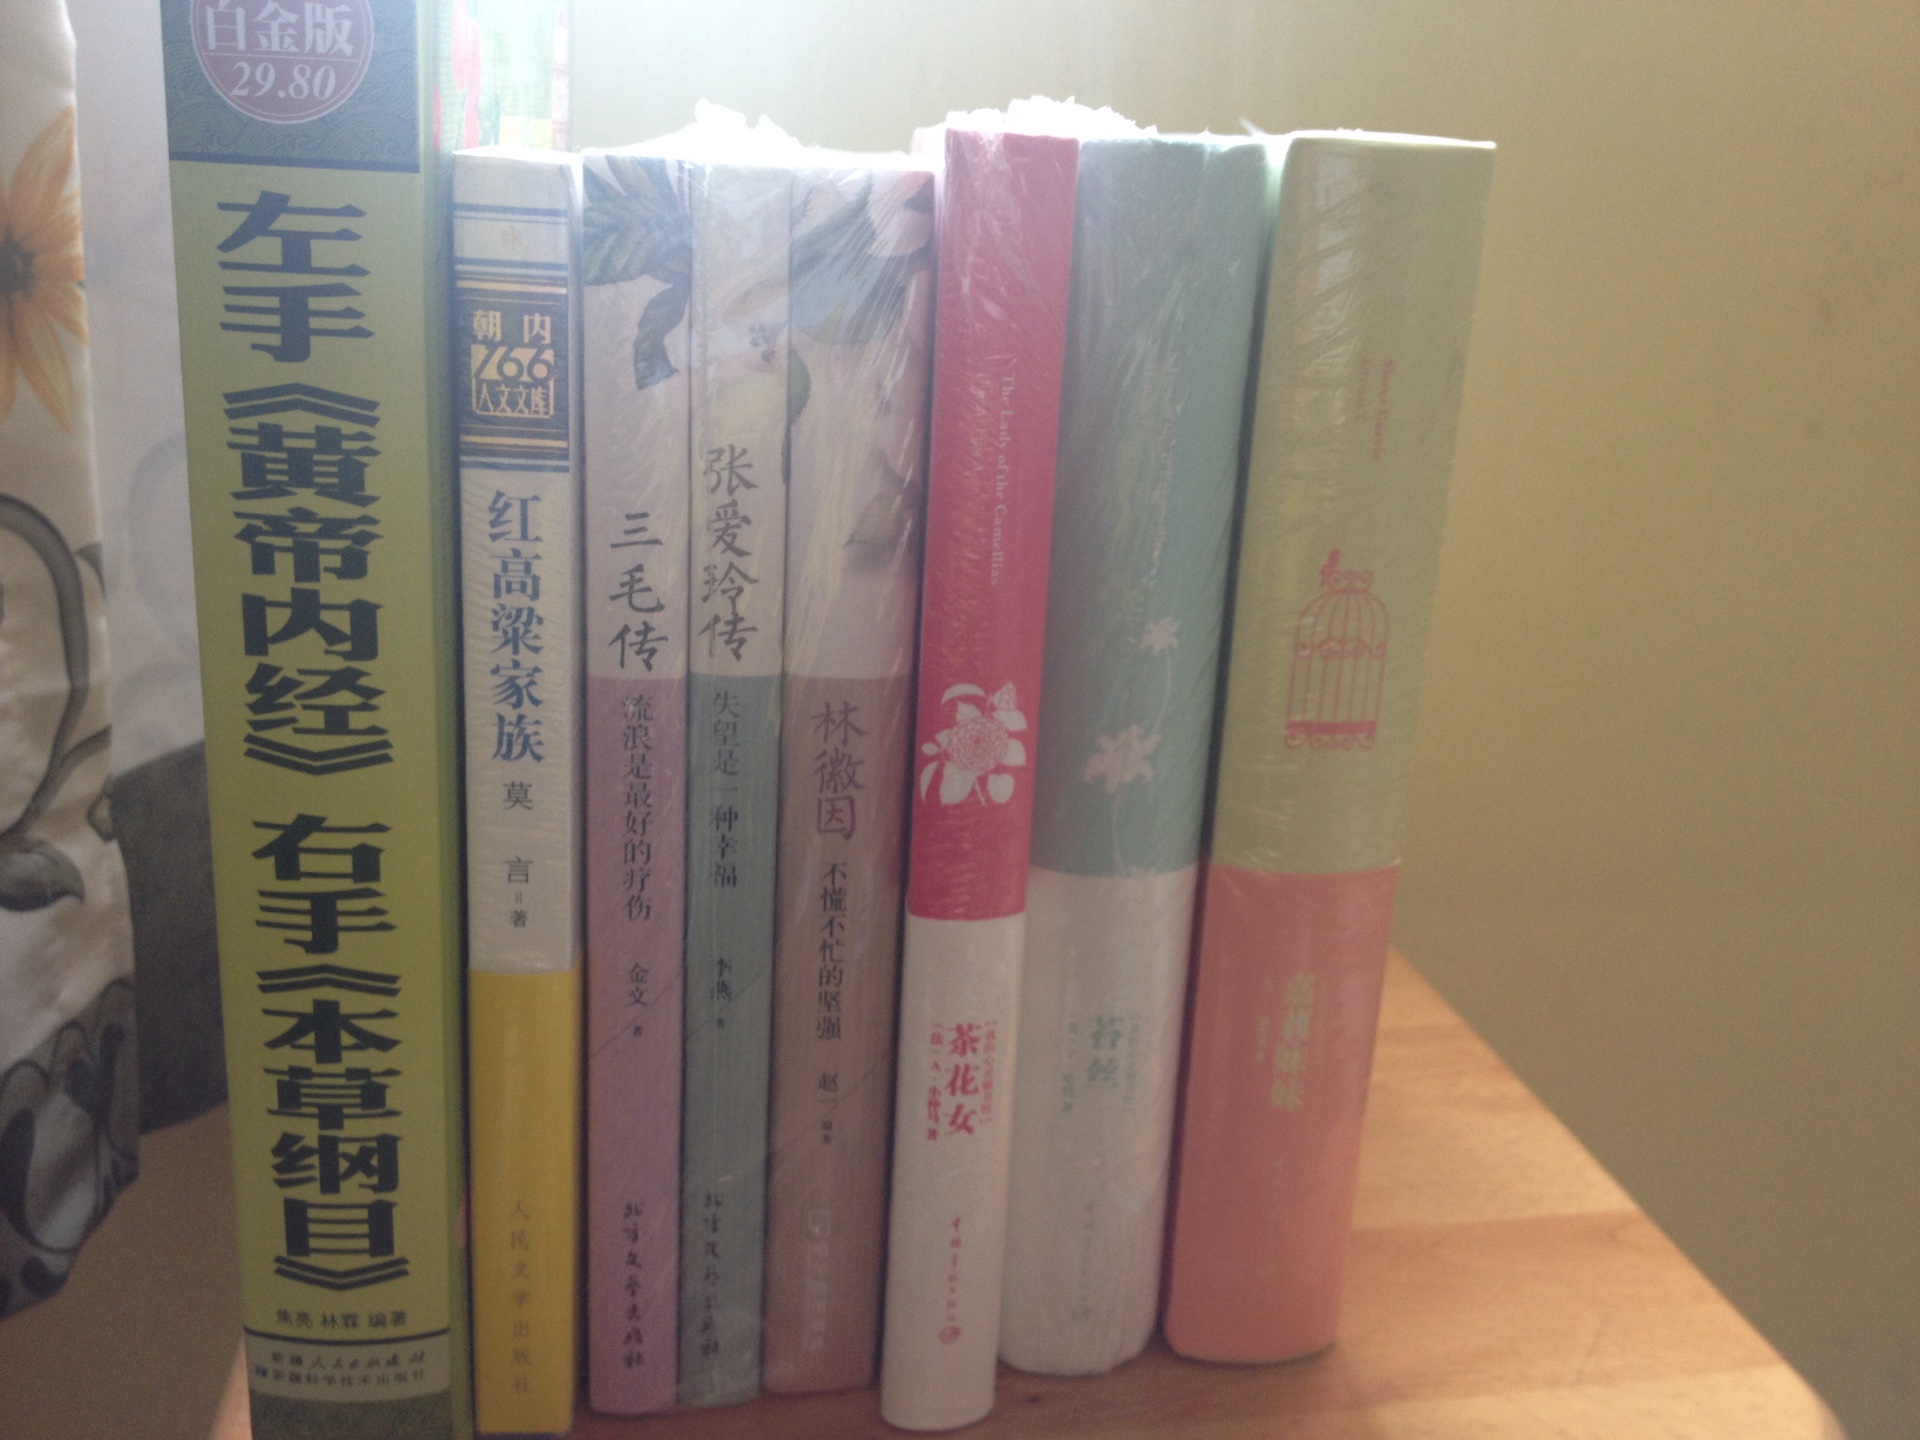 中国宇航出版社的书，我之前在新华书店买了一套《飘》，书的主页是英文，而底下一小部分就是小译注，尽管英文水平有限，但对学习挺有帮助的，所以这次又买了其它几本收着，想看就看。